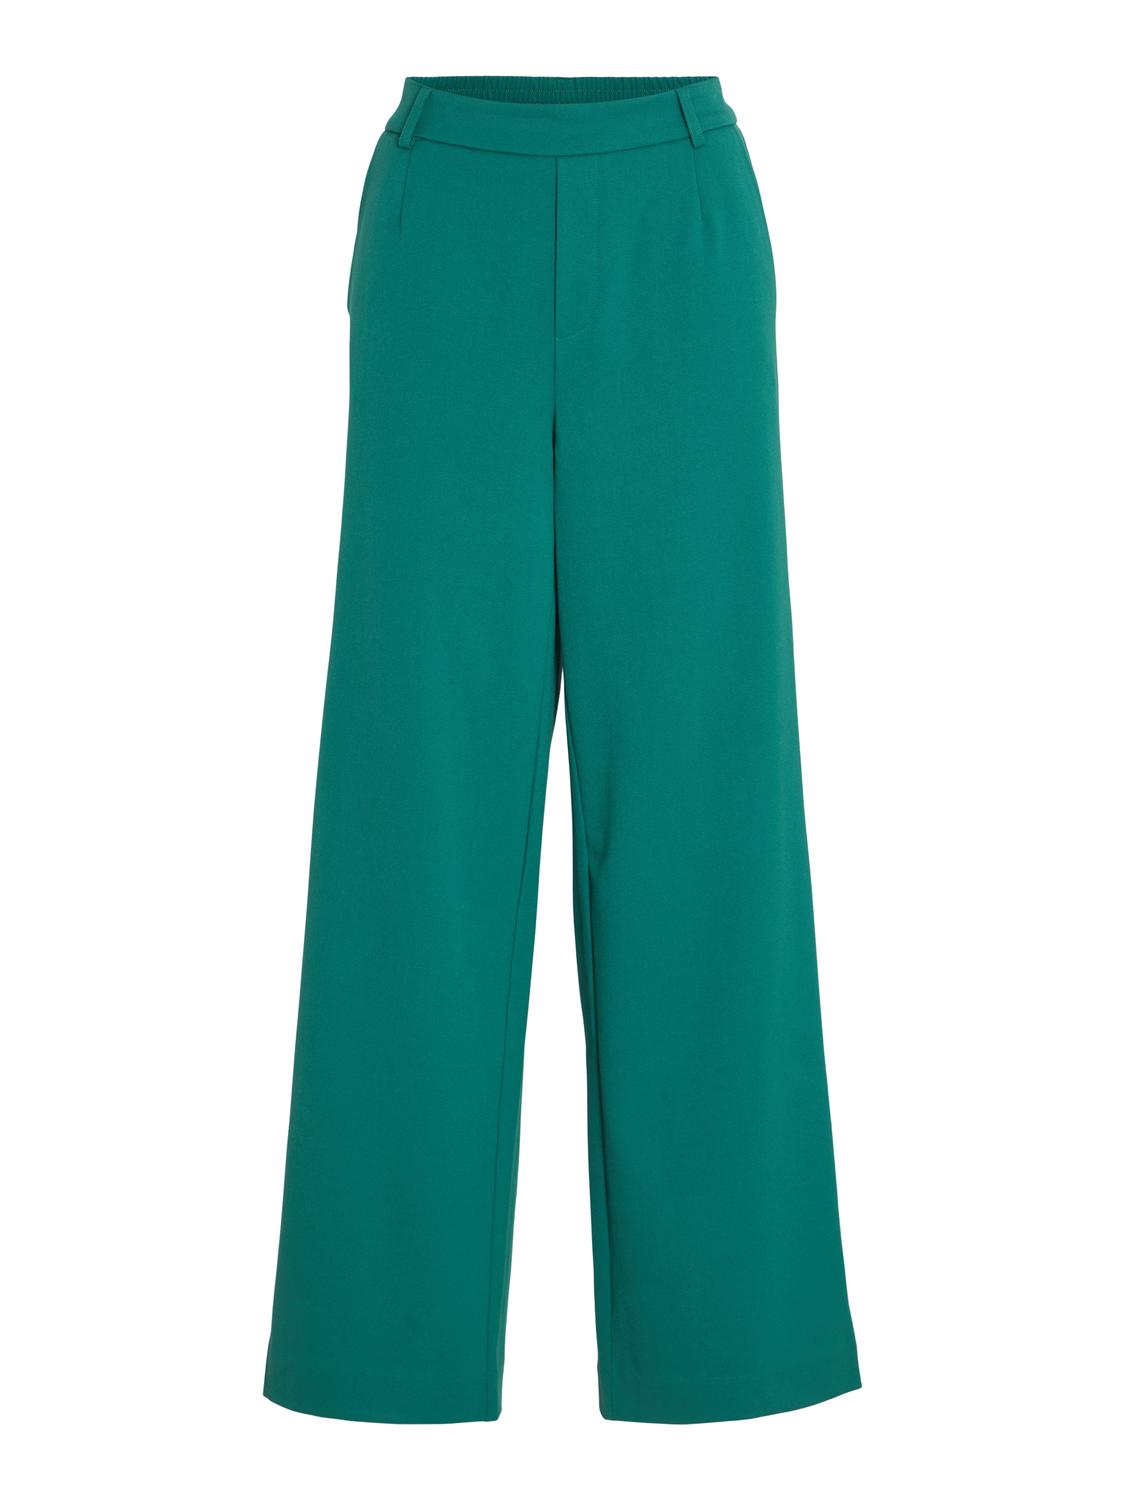 VIVARONE Pants - Ultramarine Green